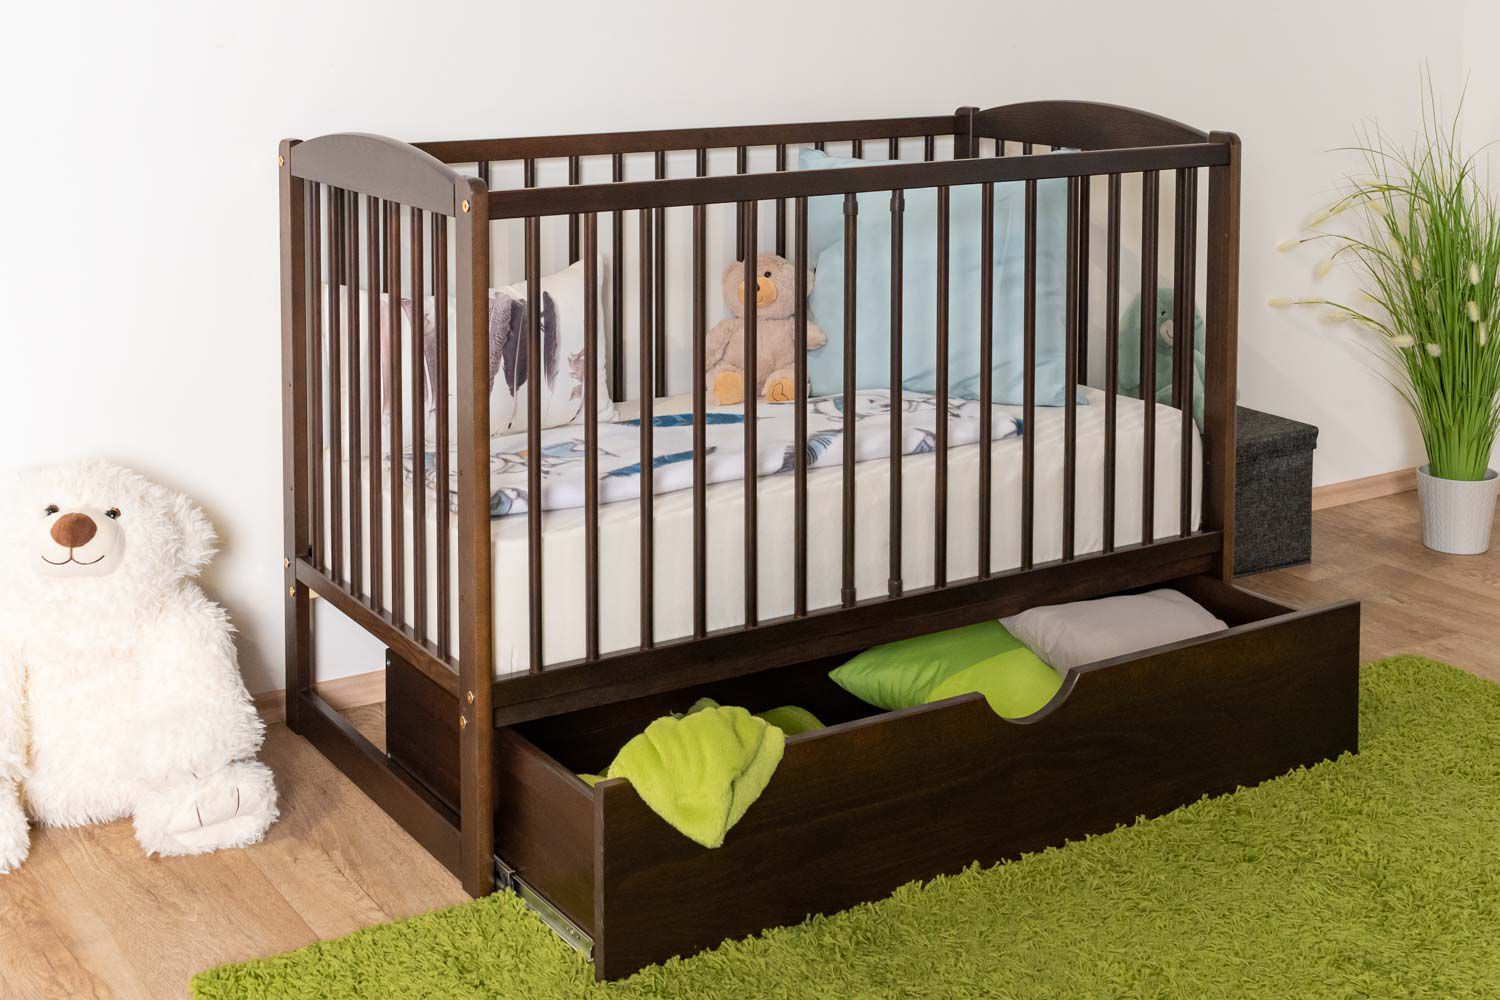 Lettino semplice / letto per bambini in pino massiccio colore noce 102, 60 x 120 cm, incl. rete a doghe, incl. cassetto, con tre gradini regolabili in altezza